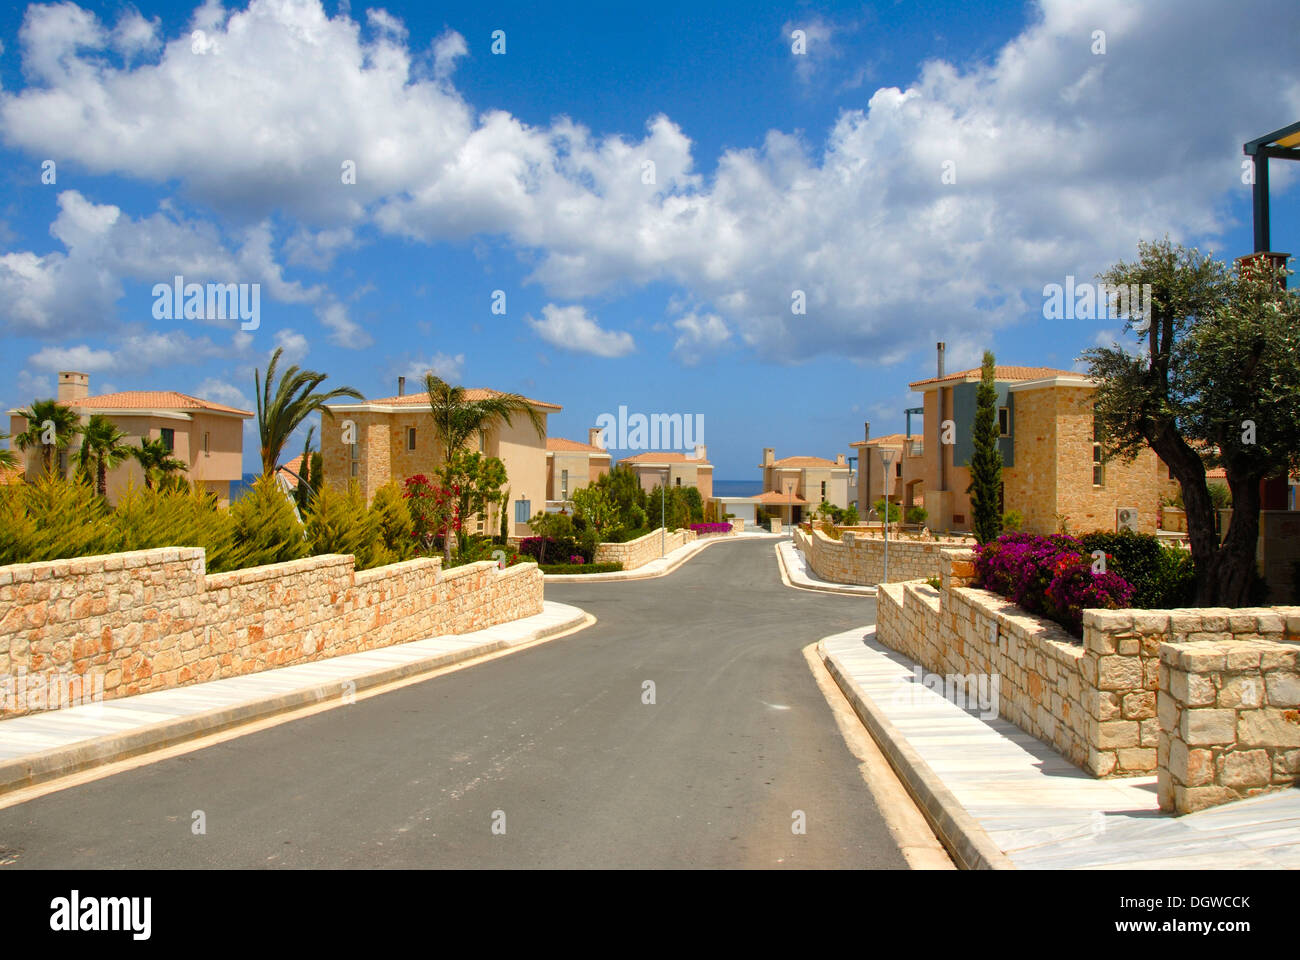 Immobilien, Straße in einem Neubaugebiet mit neu gebauten Häusern, Latchi in der Nähe von Pahos, Süd-Zypern, Zypern Stockfoto